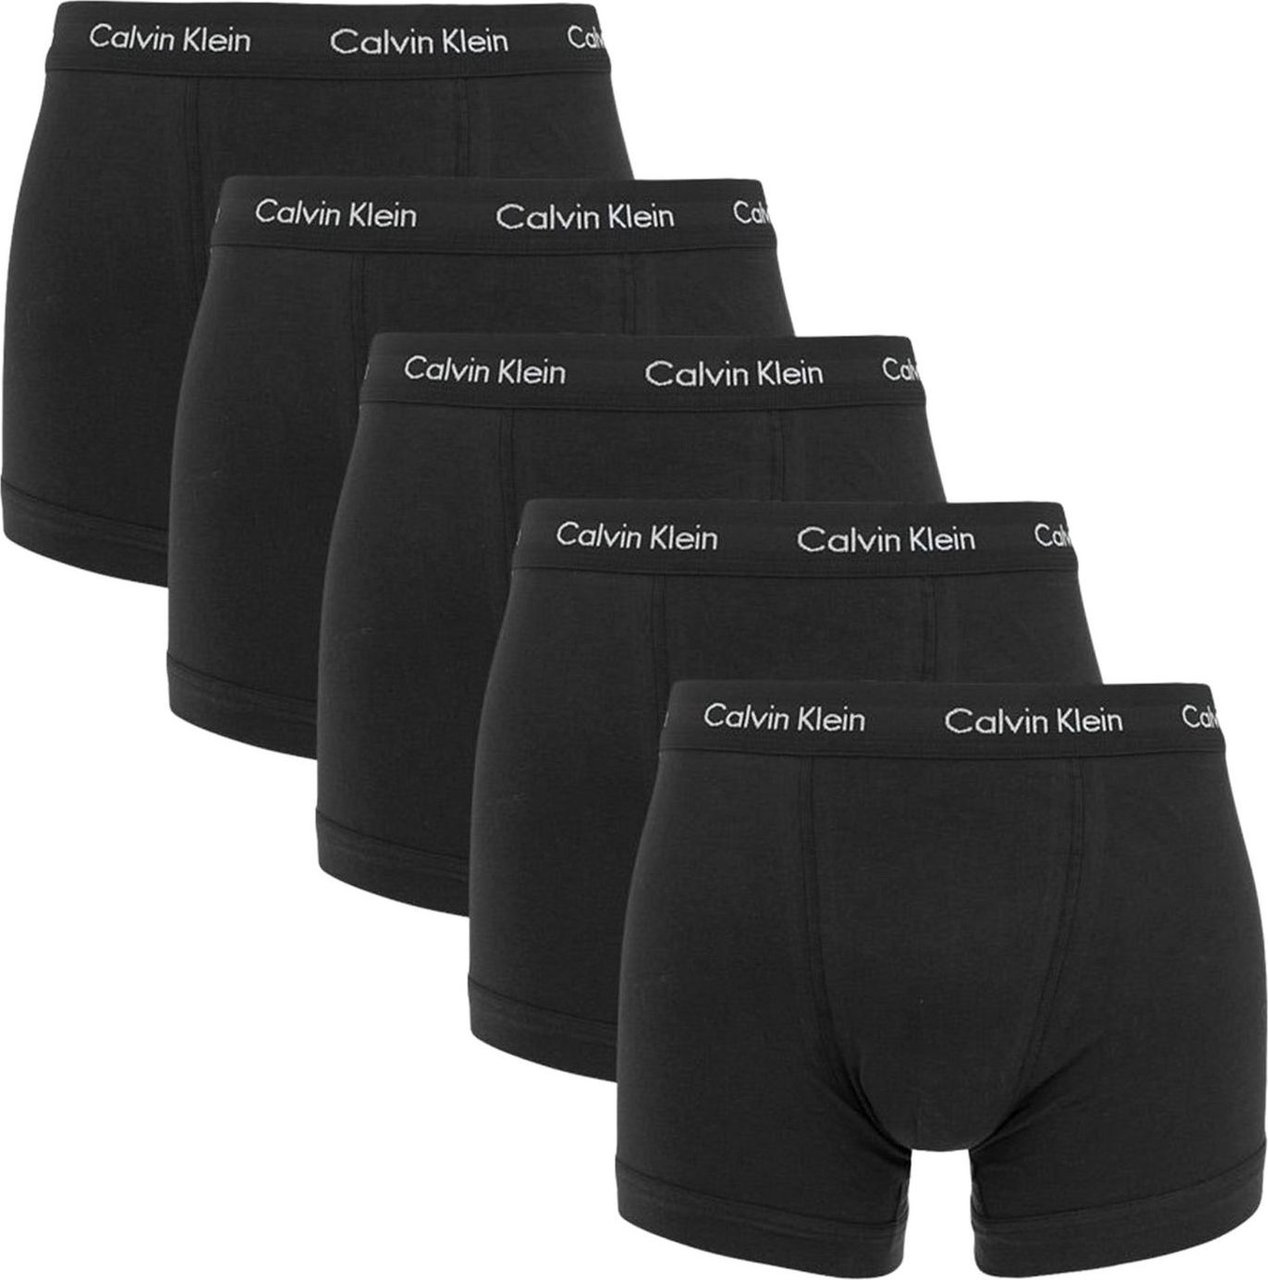 Calvin Klein Boxershorts 5-Pack Zwart Zwart